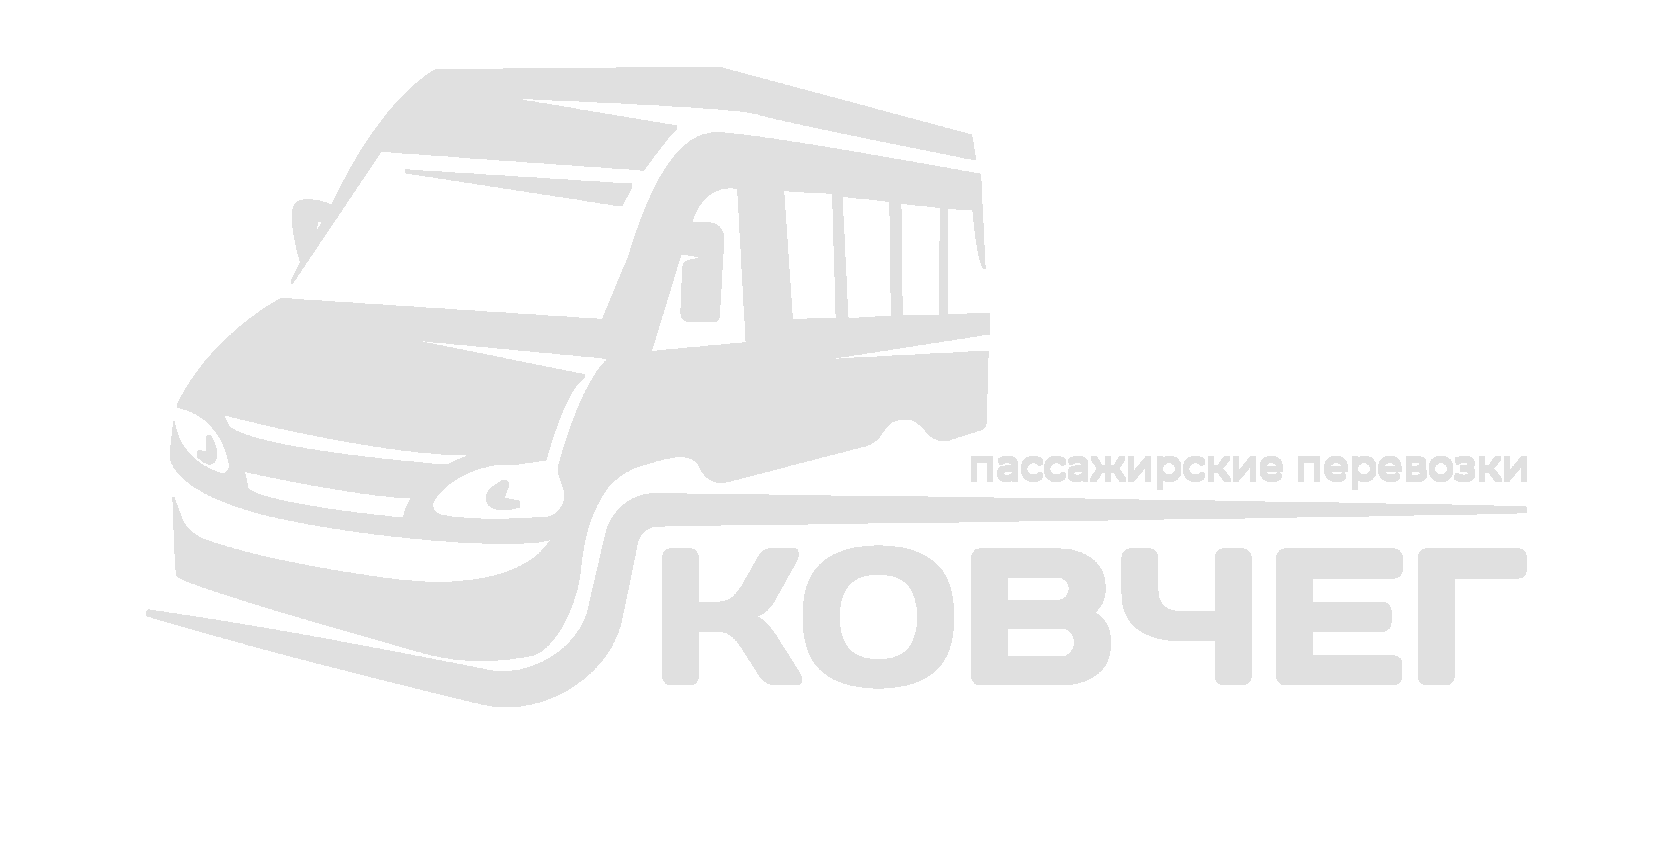 Транспортная компания Ковчег. Пассажирские перевозки по всей России. Аренда микроавтобусов и минивэнов.